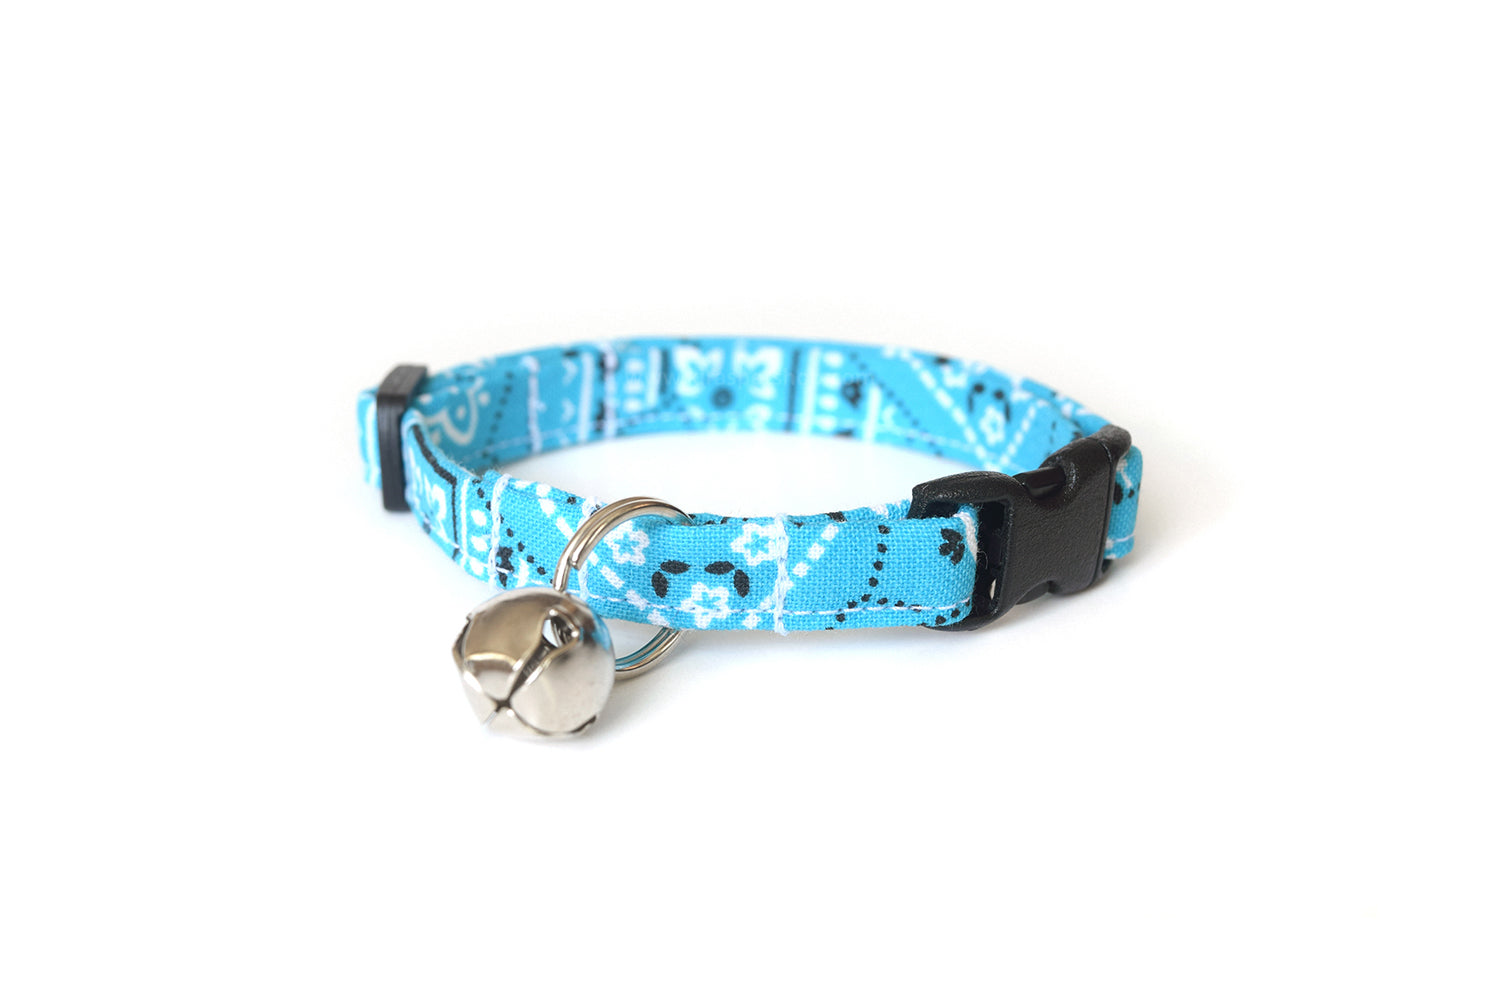 Sky Blue Cat Collar - Blue Paisley Bandana Print Breakaway Cat Collar - Handmade by Kira's Pet Shop